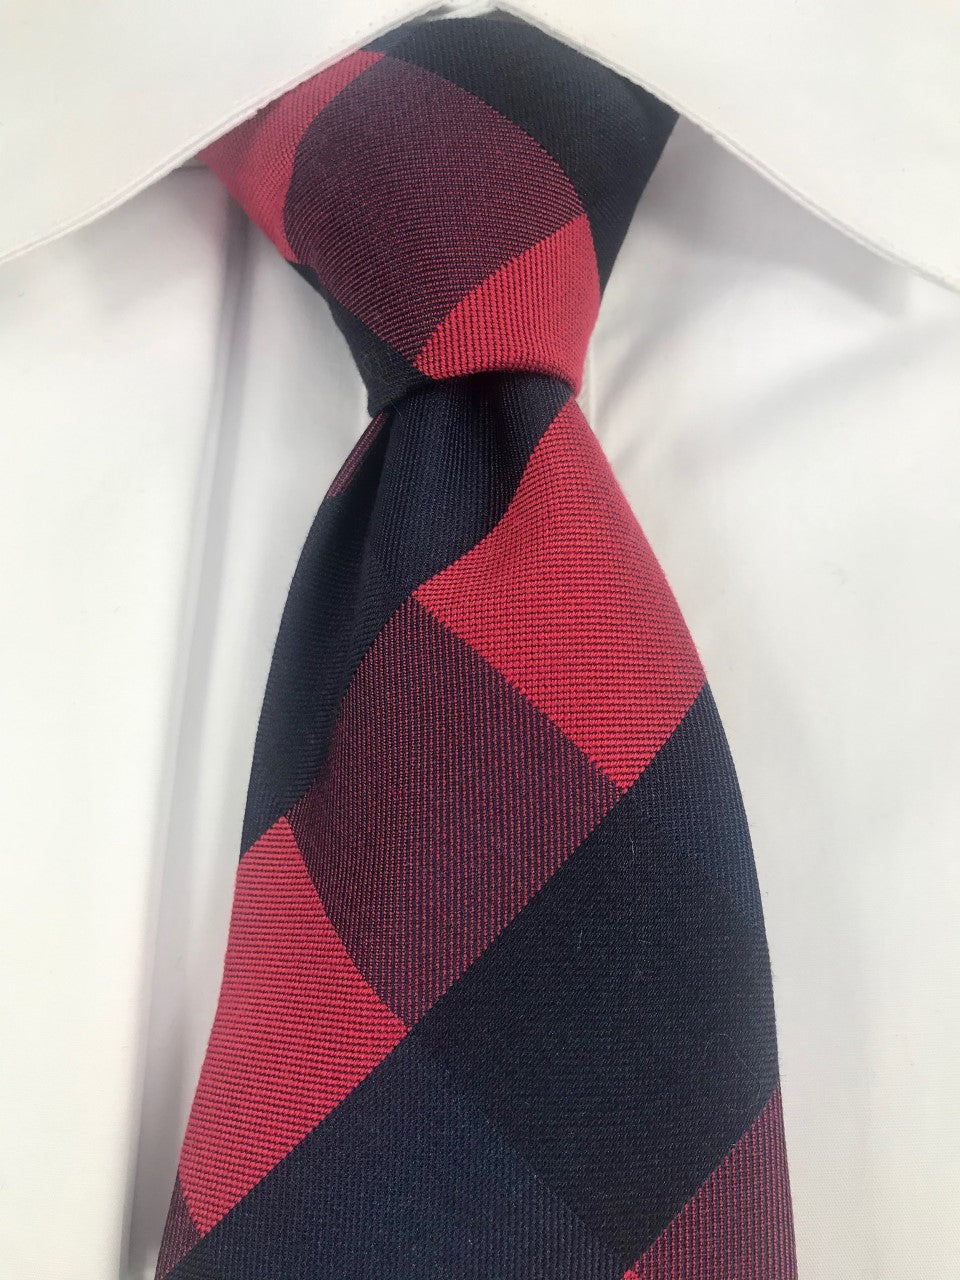 Red and black pattern necktie